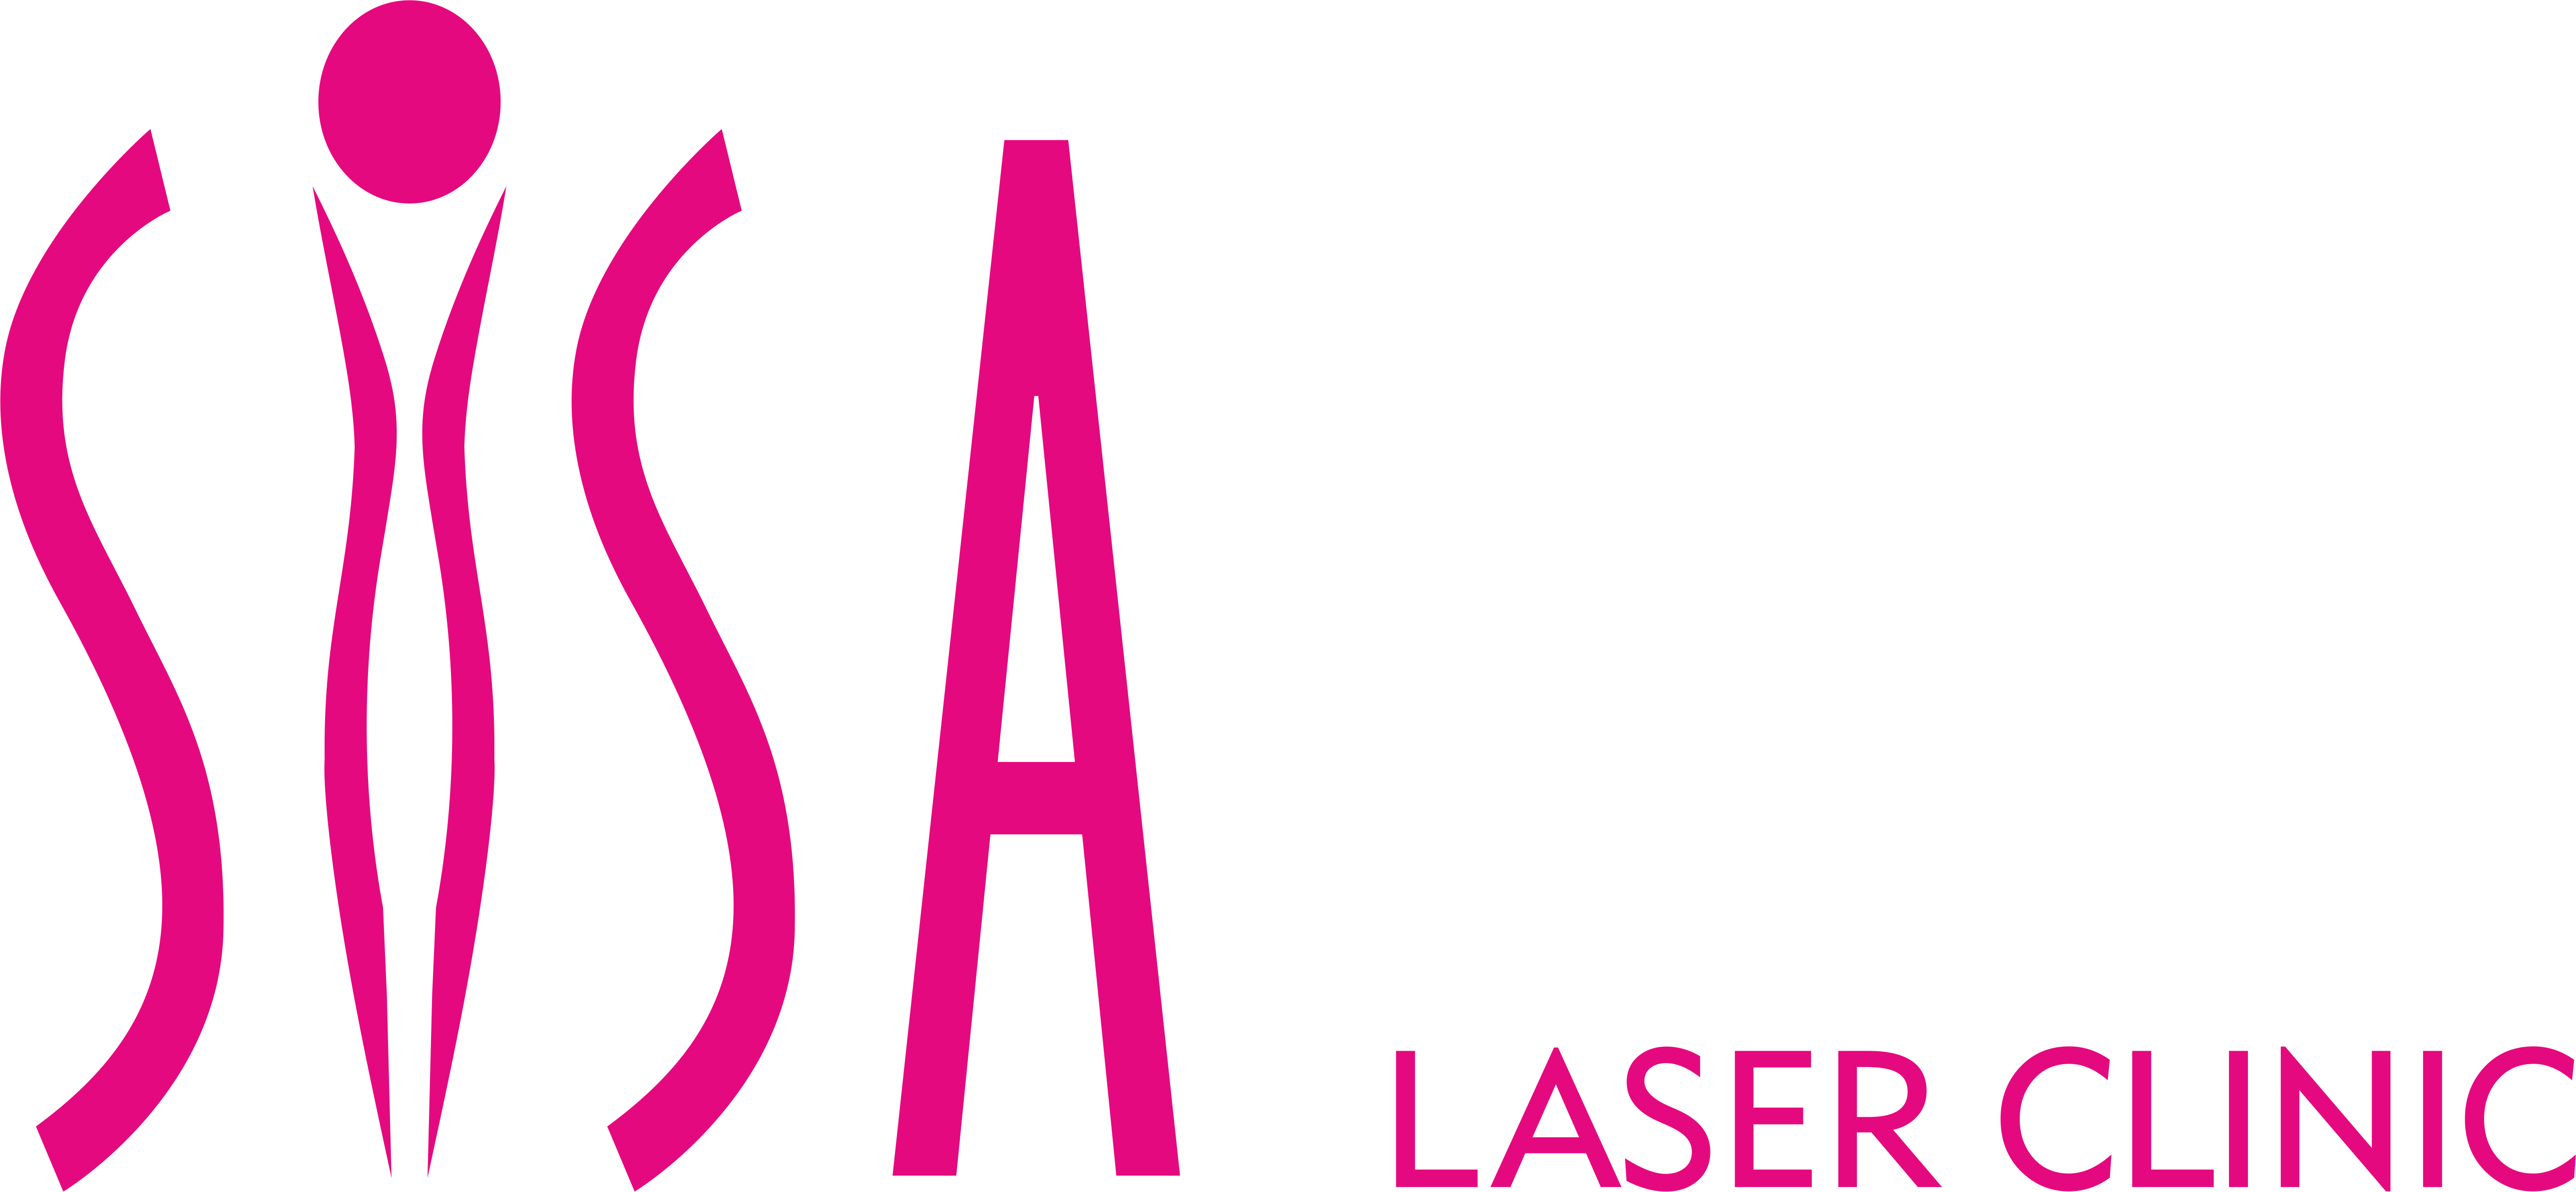 Sisa Laser Clinic